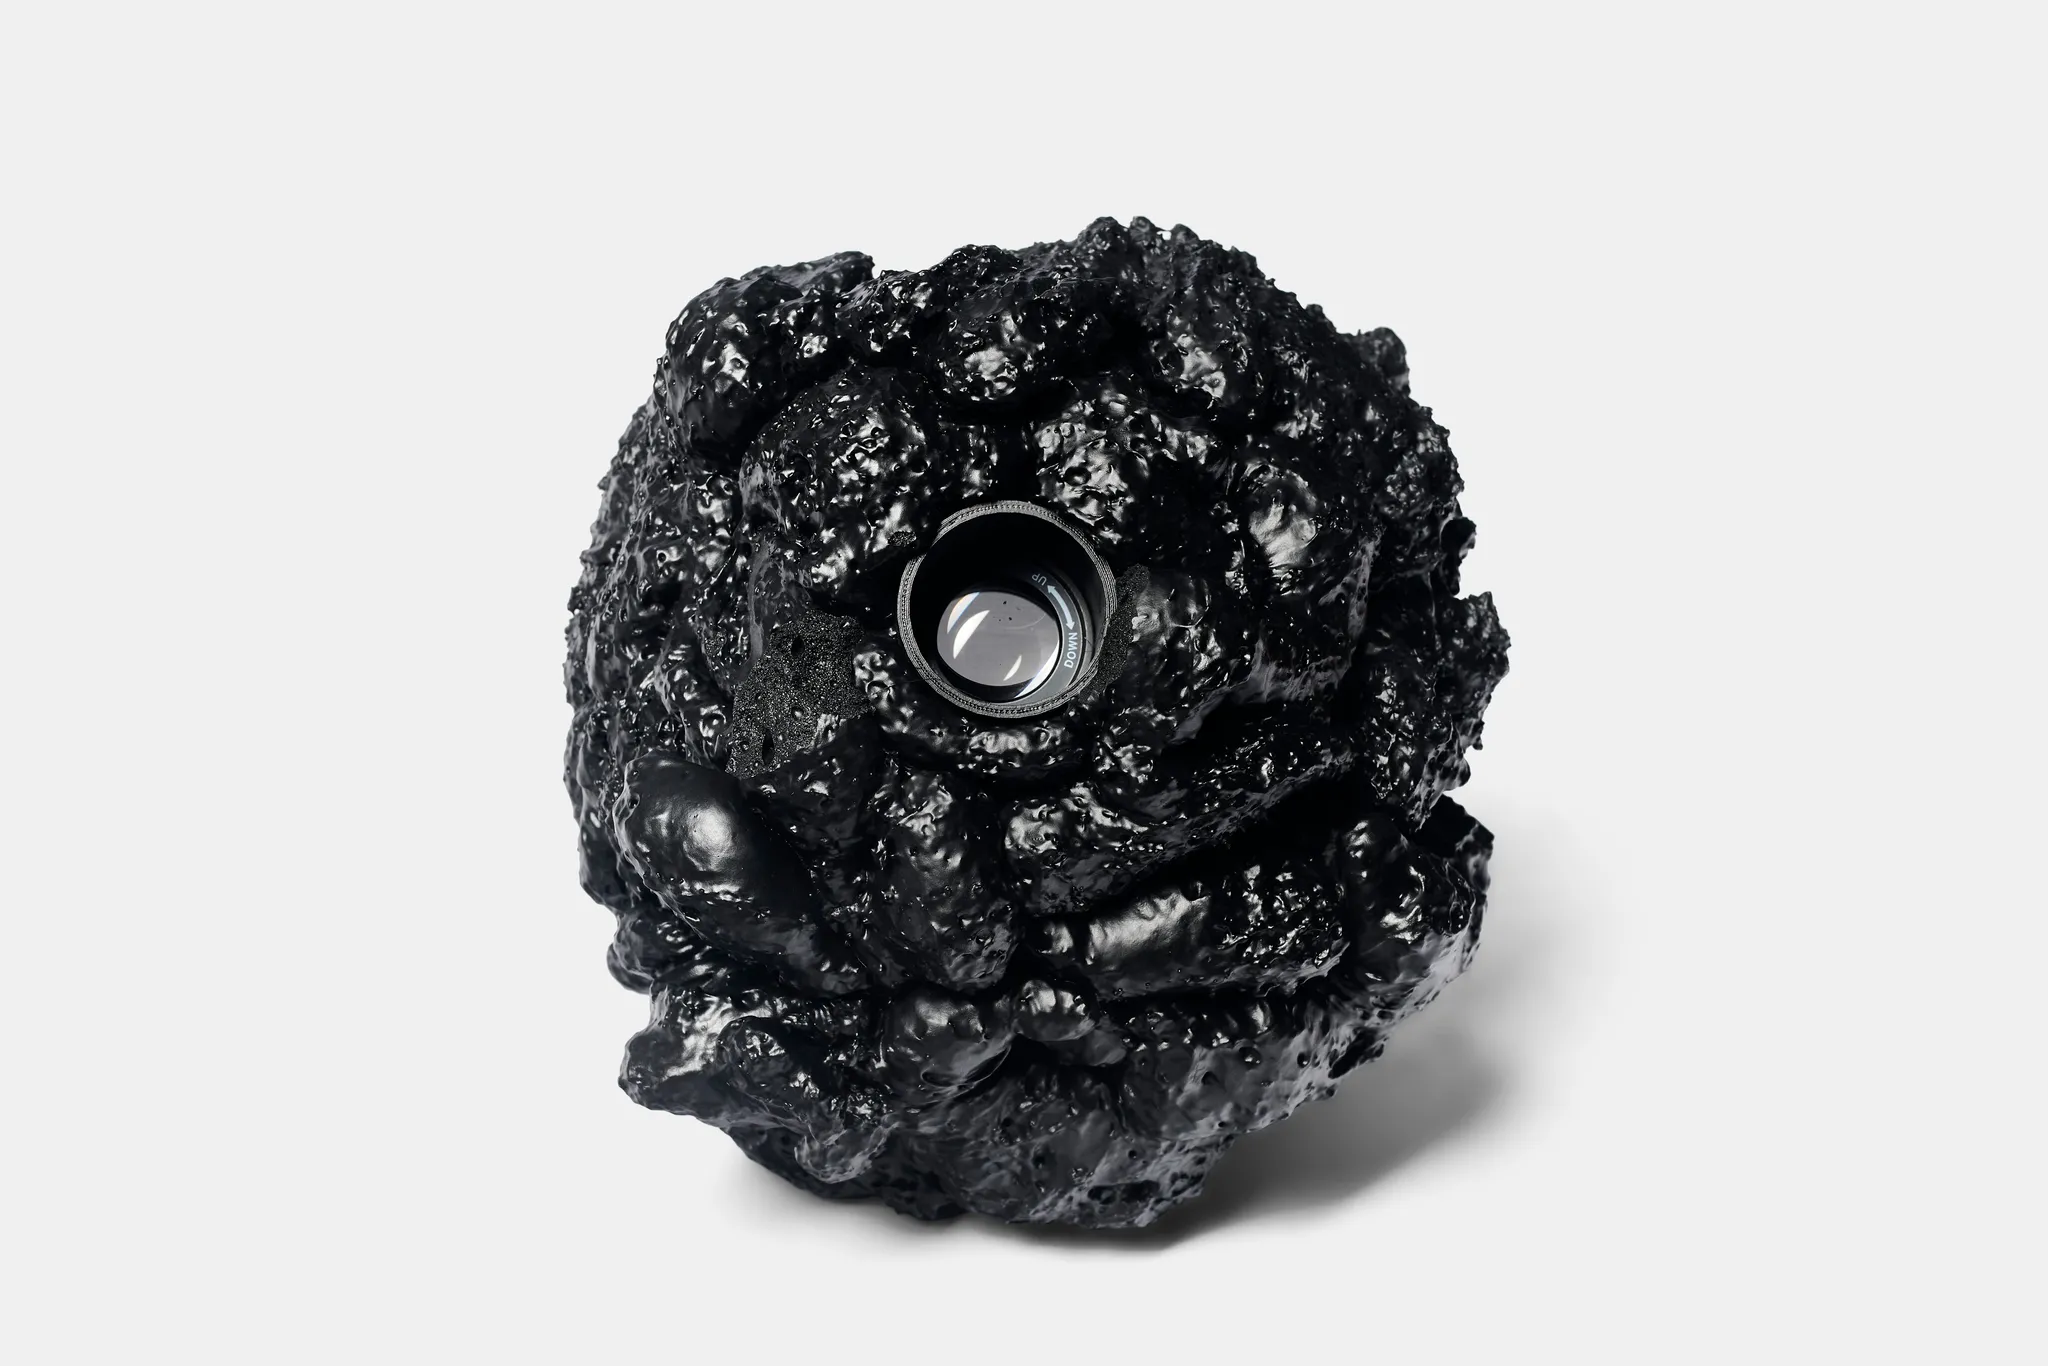 Een glimmende zwarte steen met een lens erin